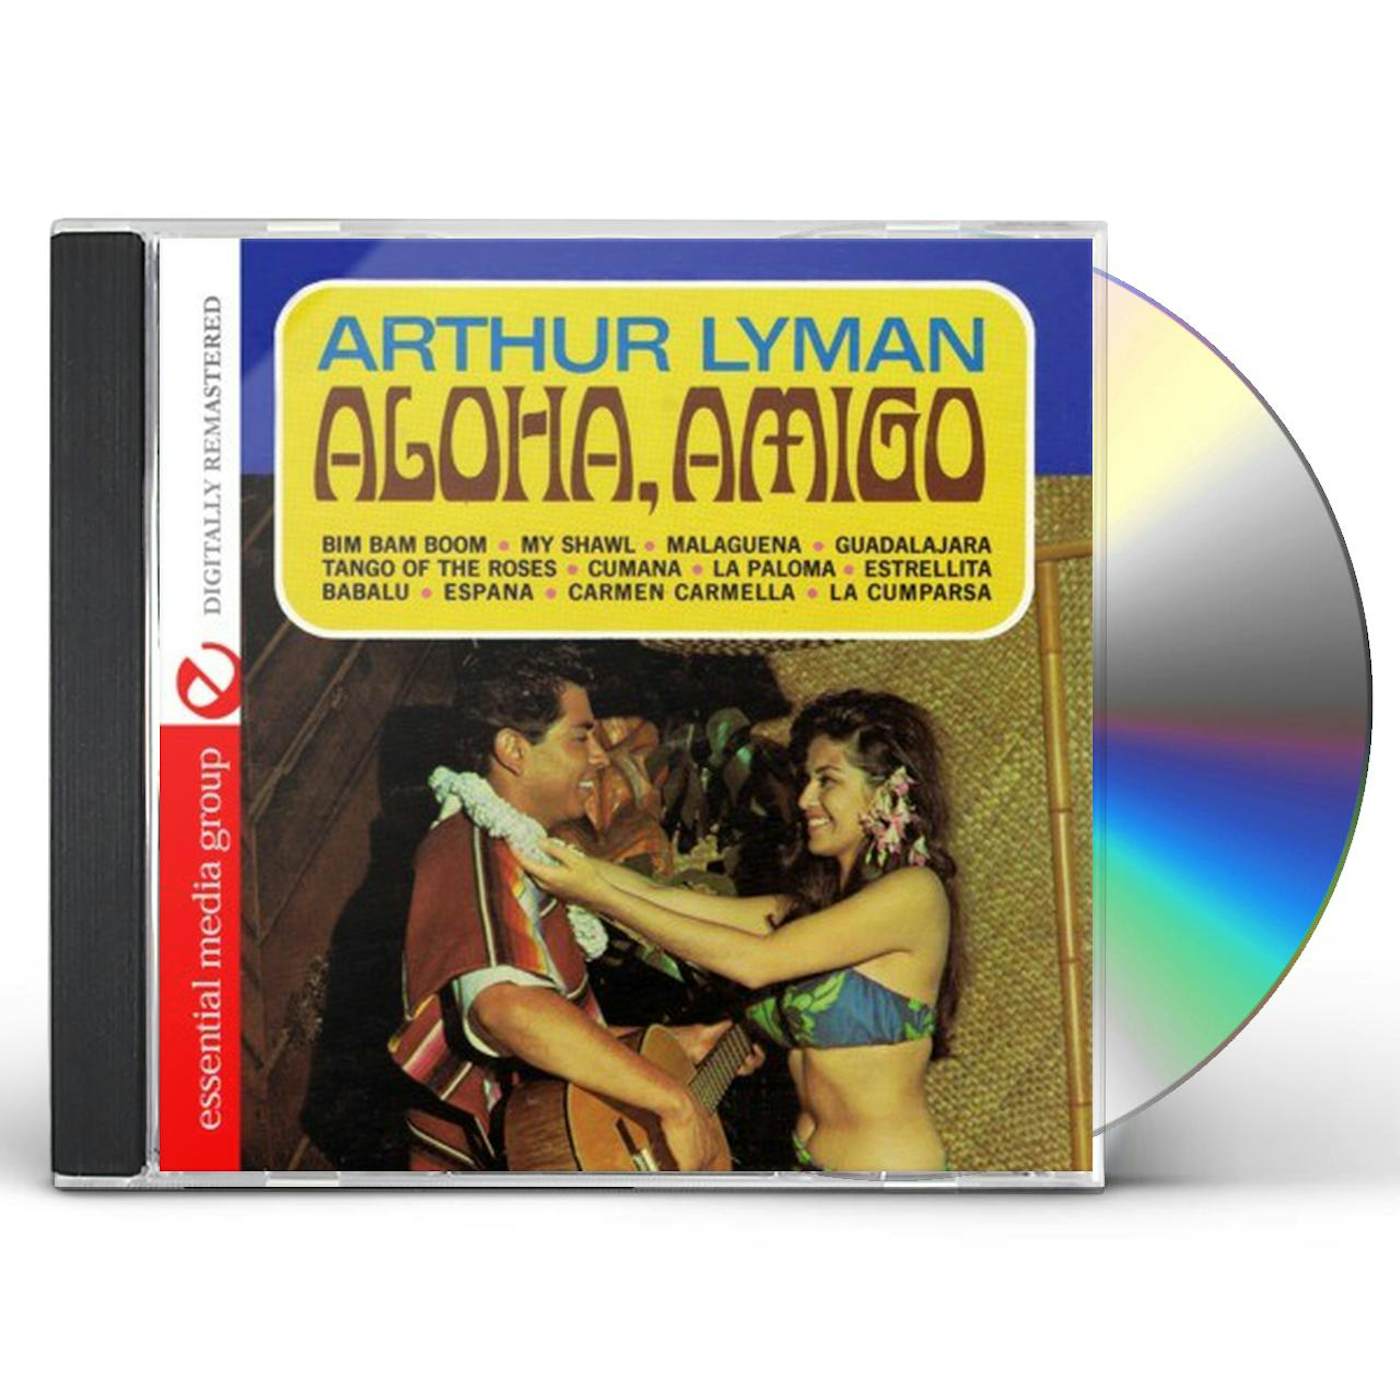 Arthur Lyman ALOHA, AMIGO CD